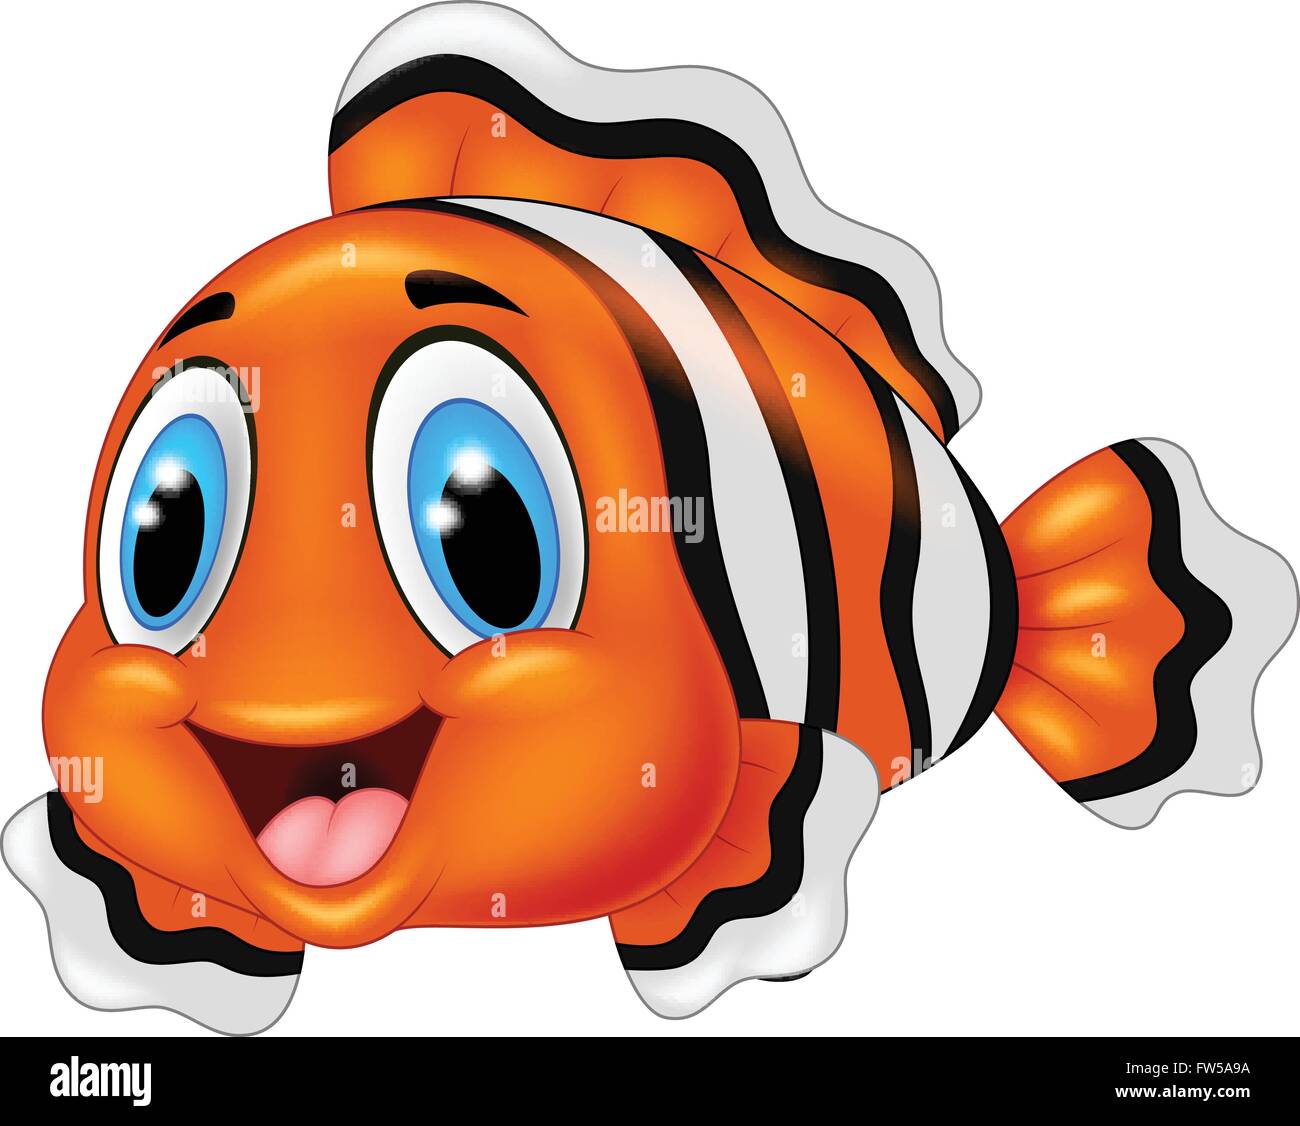 Cute clown fish cartoon posing Stock Vector Image & Art - Alamy